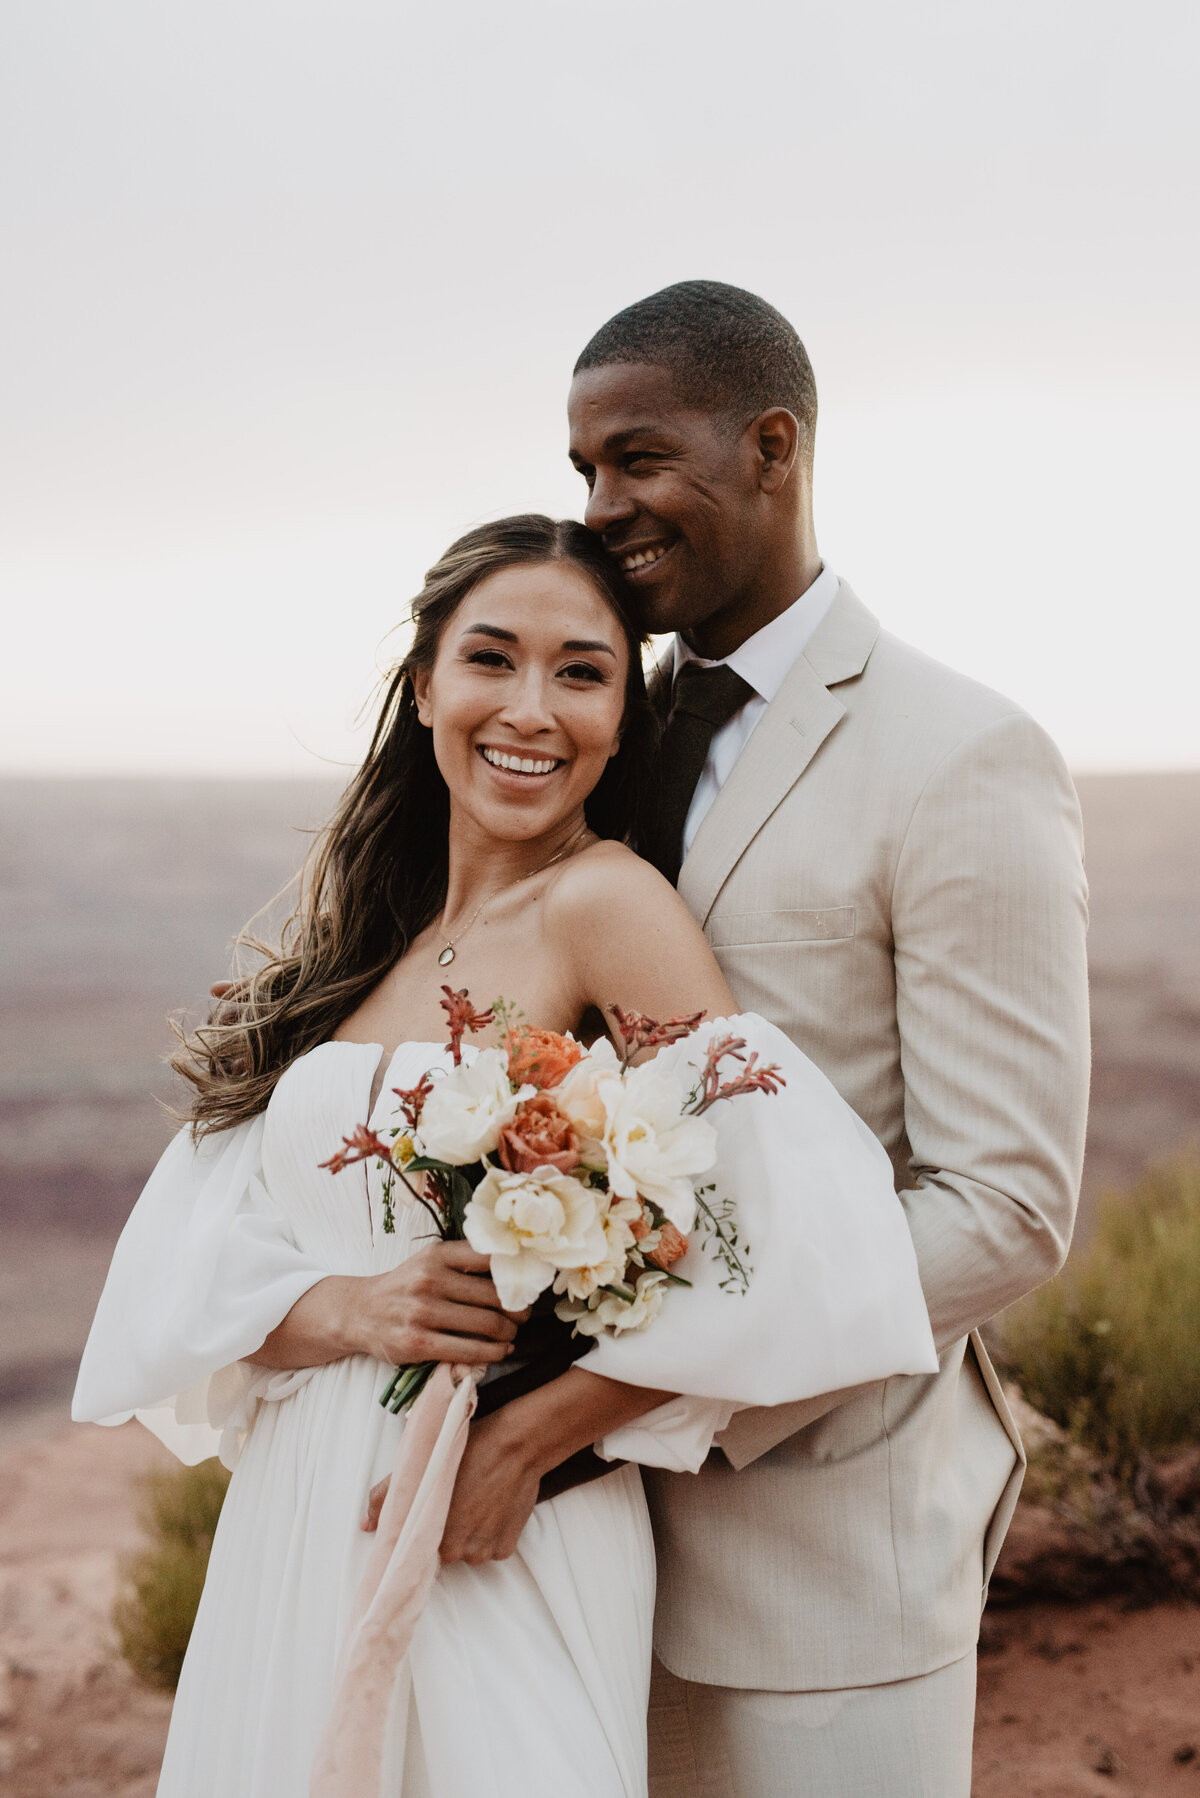 Utah Elopement Photographer captures outdoor wedding bridal portraits